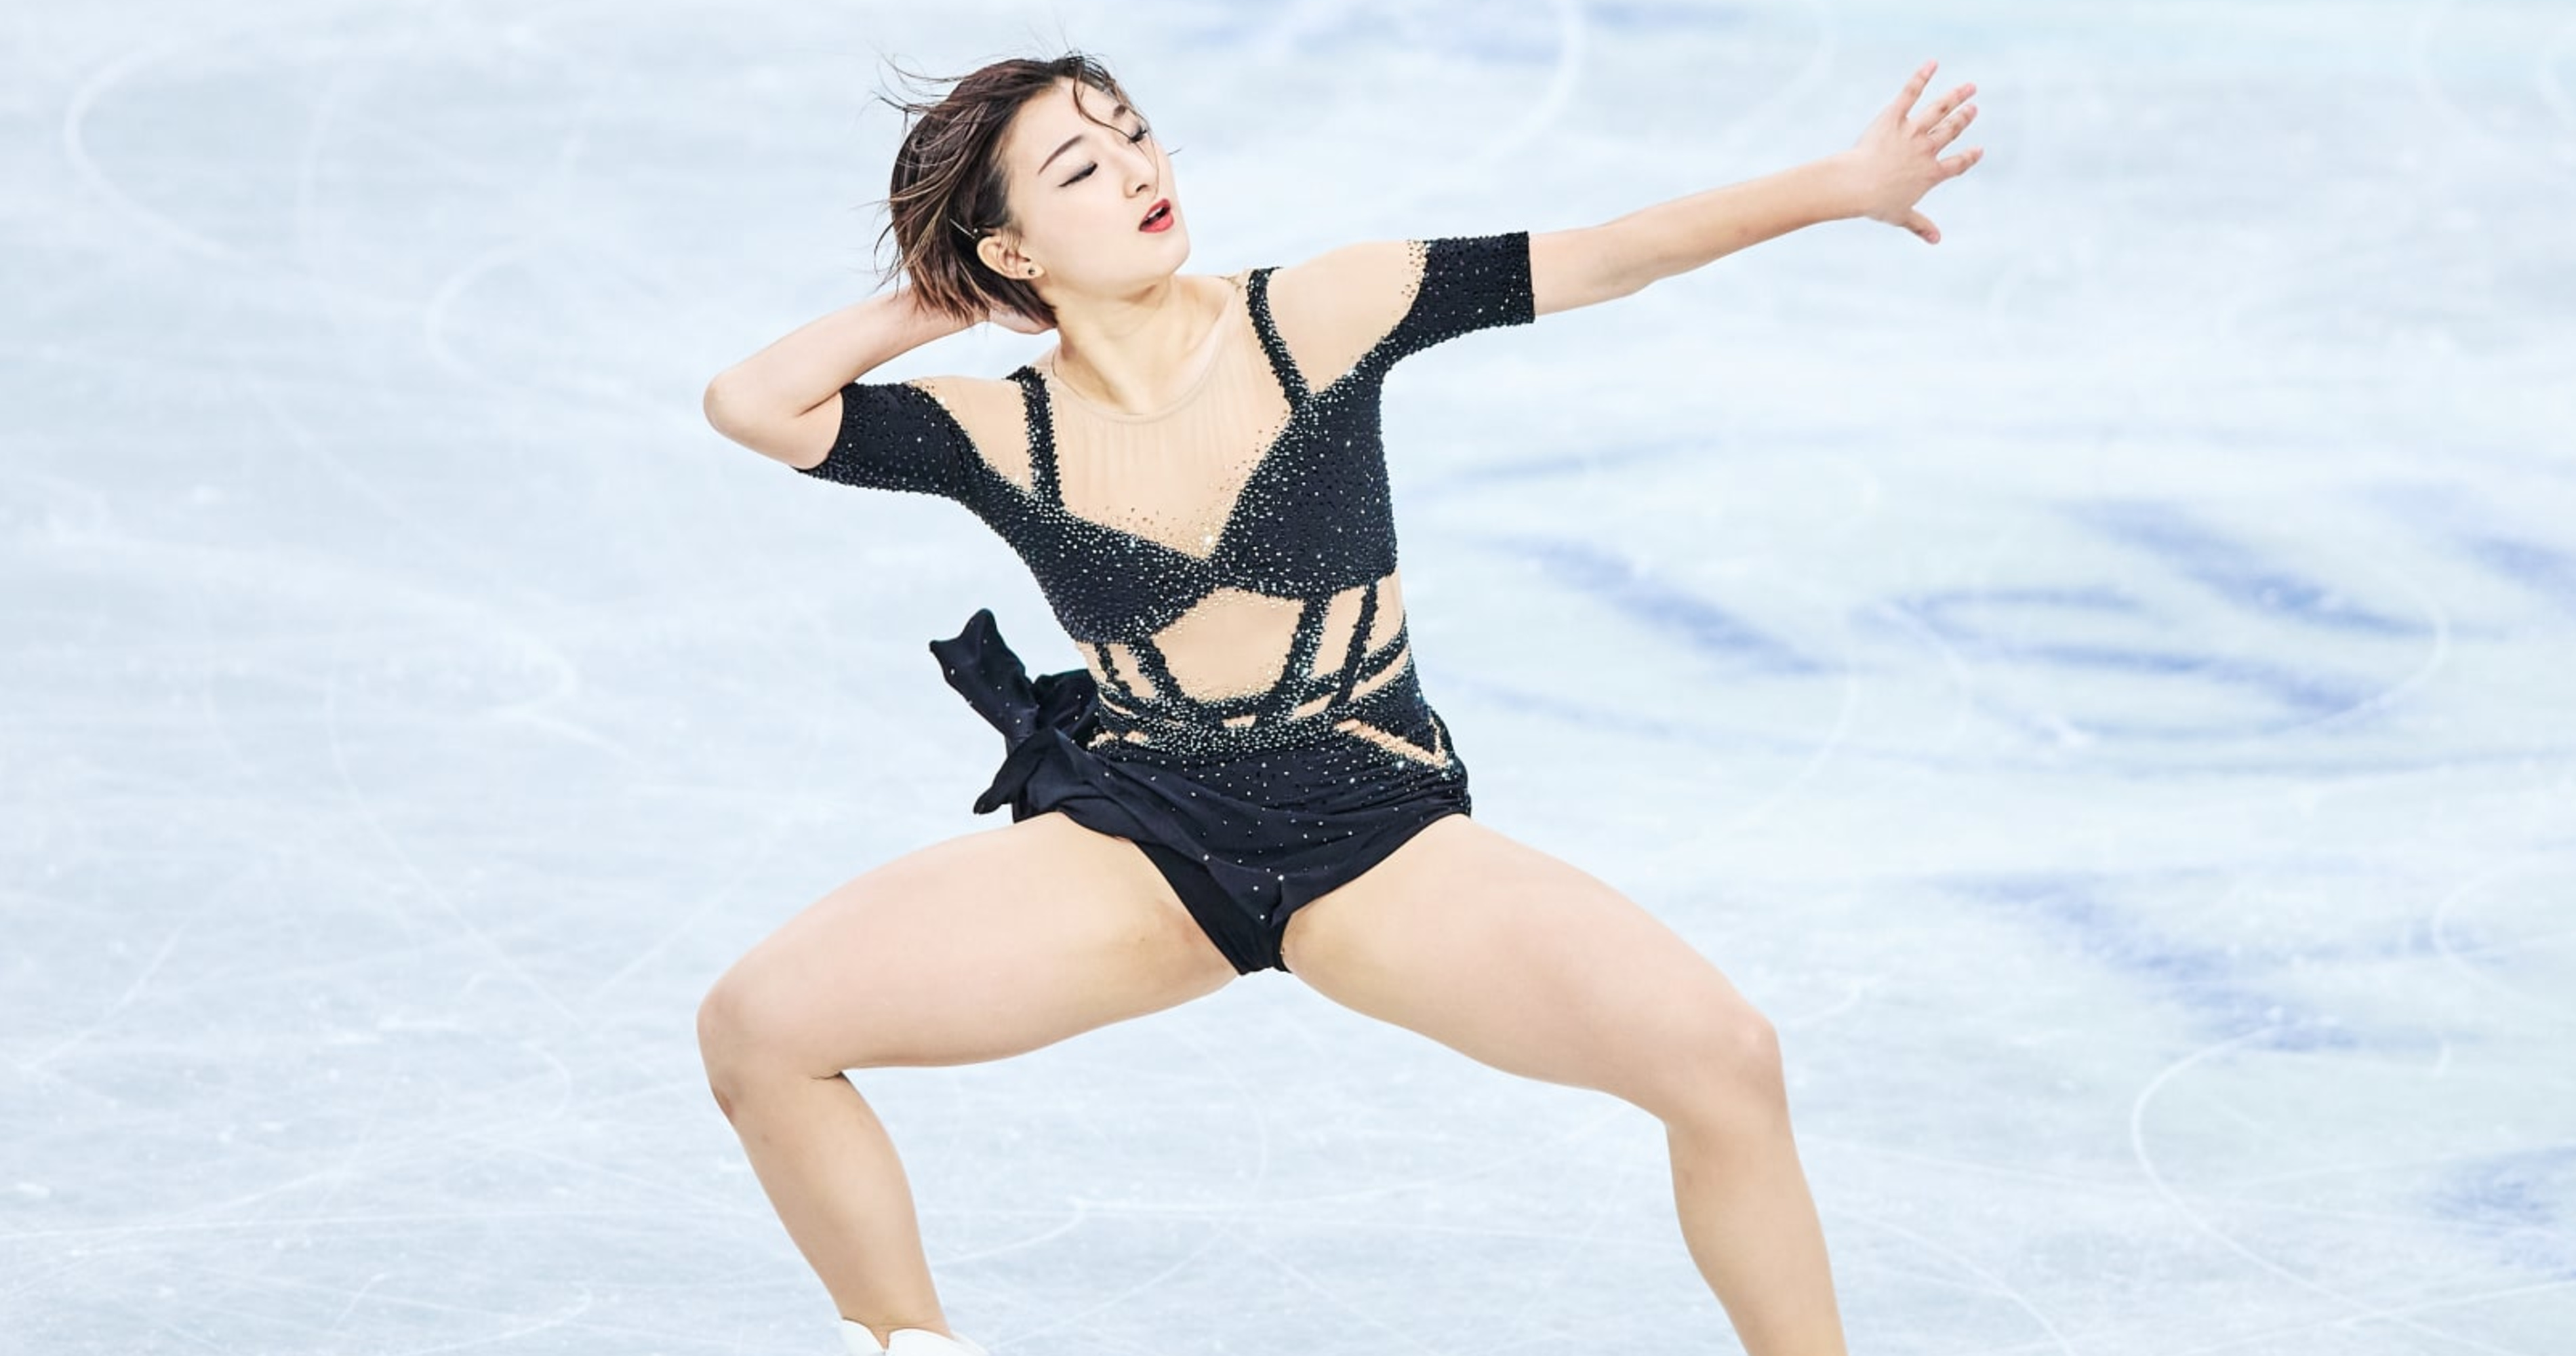 ISU World Figure Skating Championships 2023 Pairs, Women's Short